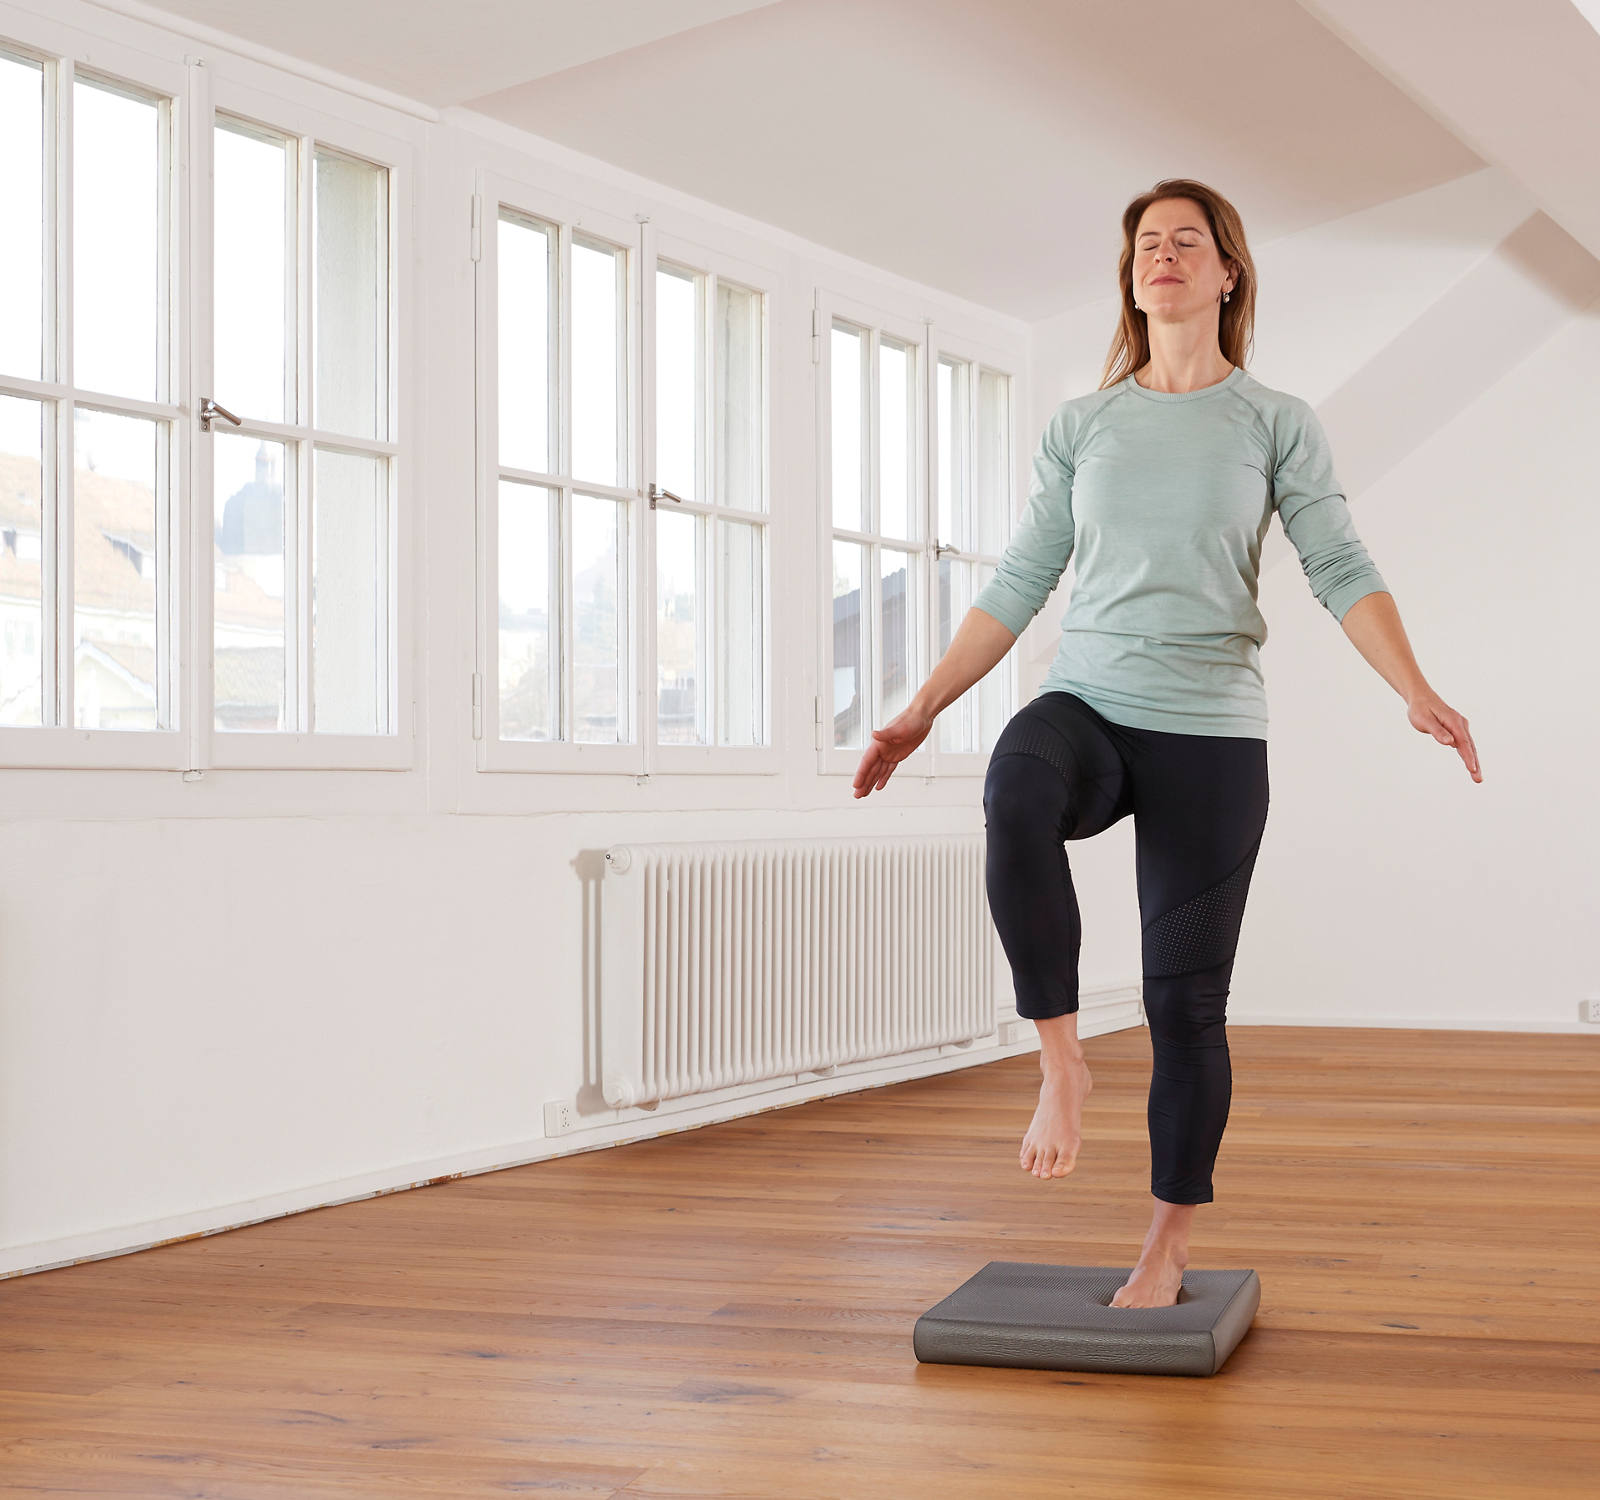 Balance Pad training: 6 effective exercises